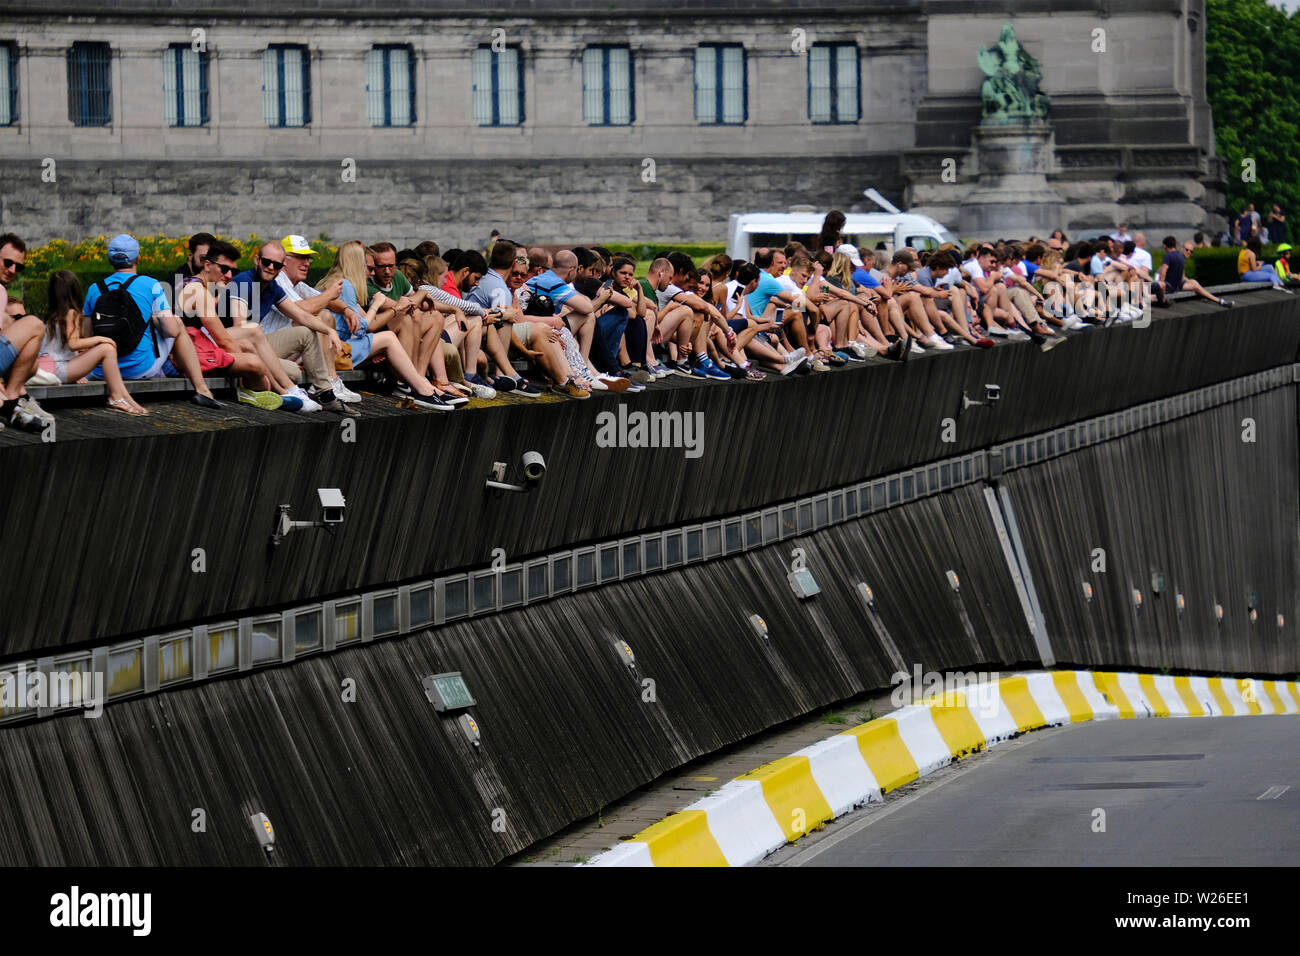 Bruxelles, Belgio. 6 luglio 2019. Spettatori assistere alla gara durante la prima fase della 106ª edizione del Tour de France corsa in bicicletta tra Bruxelles e Bruxelles. Foto Stock